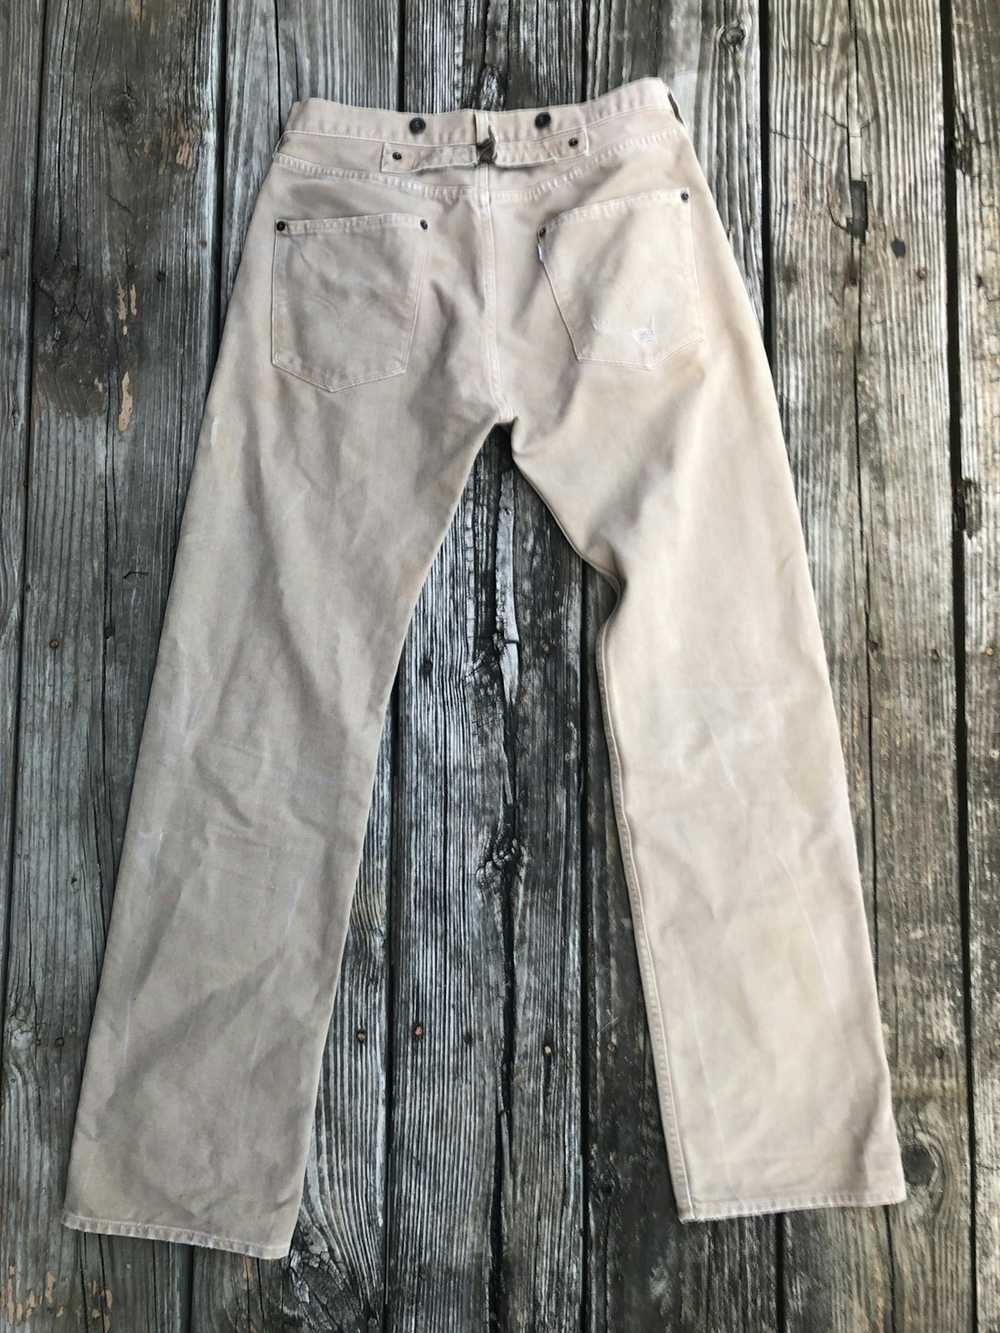 Levi's Vintage Clothing Vintage Levi’s Jeans - image 6